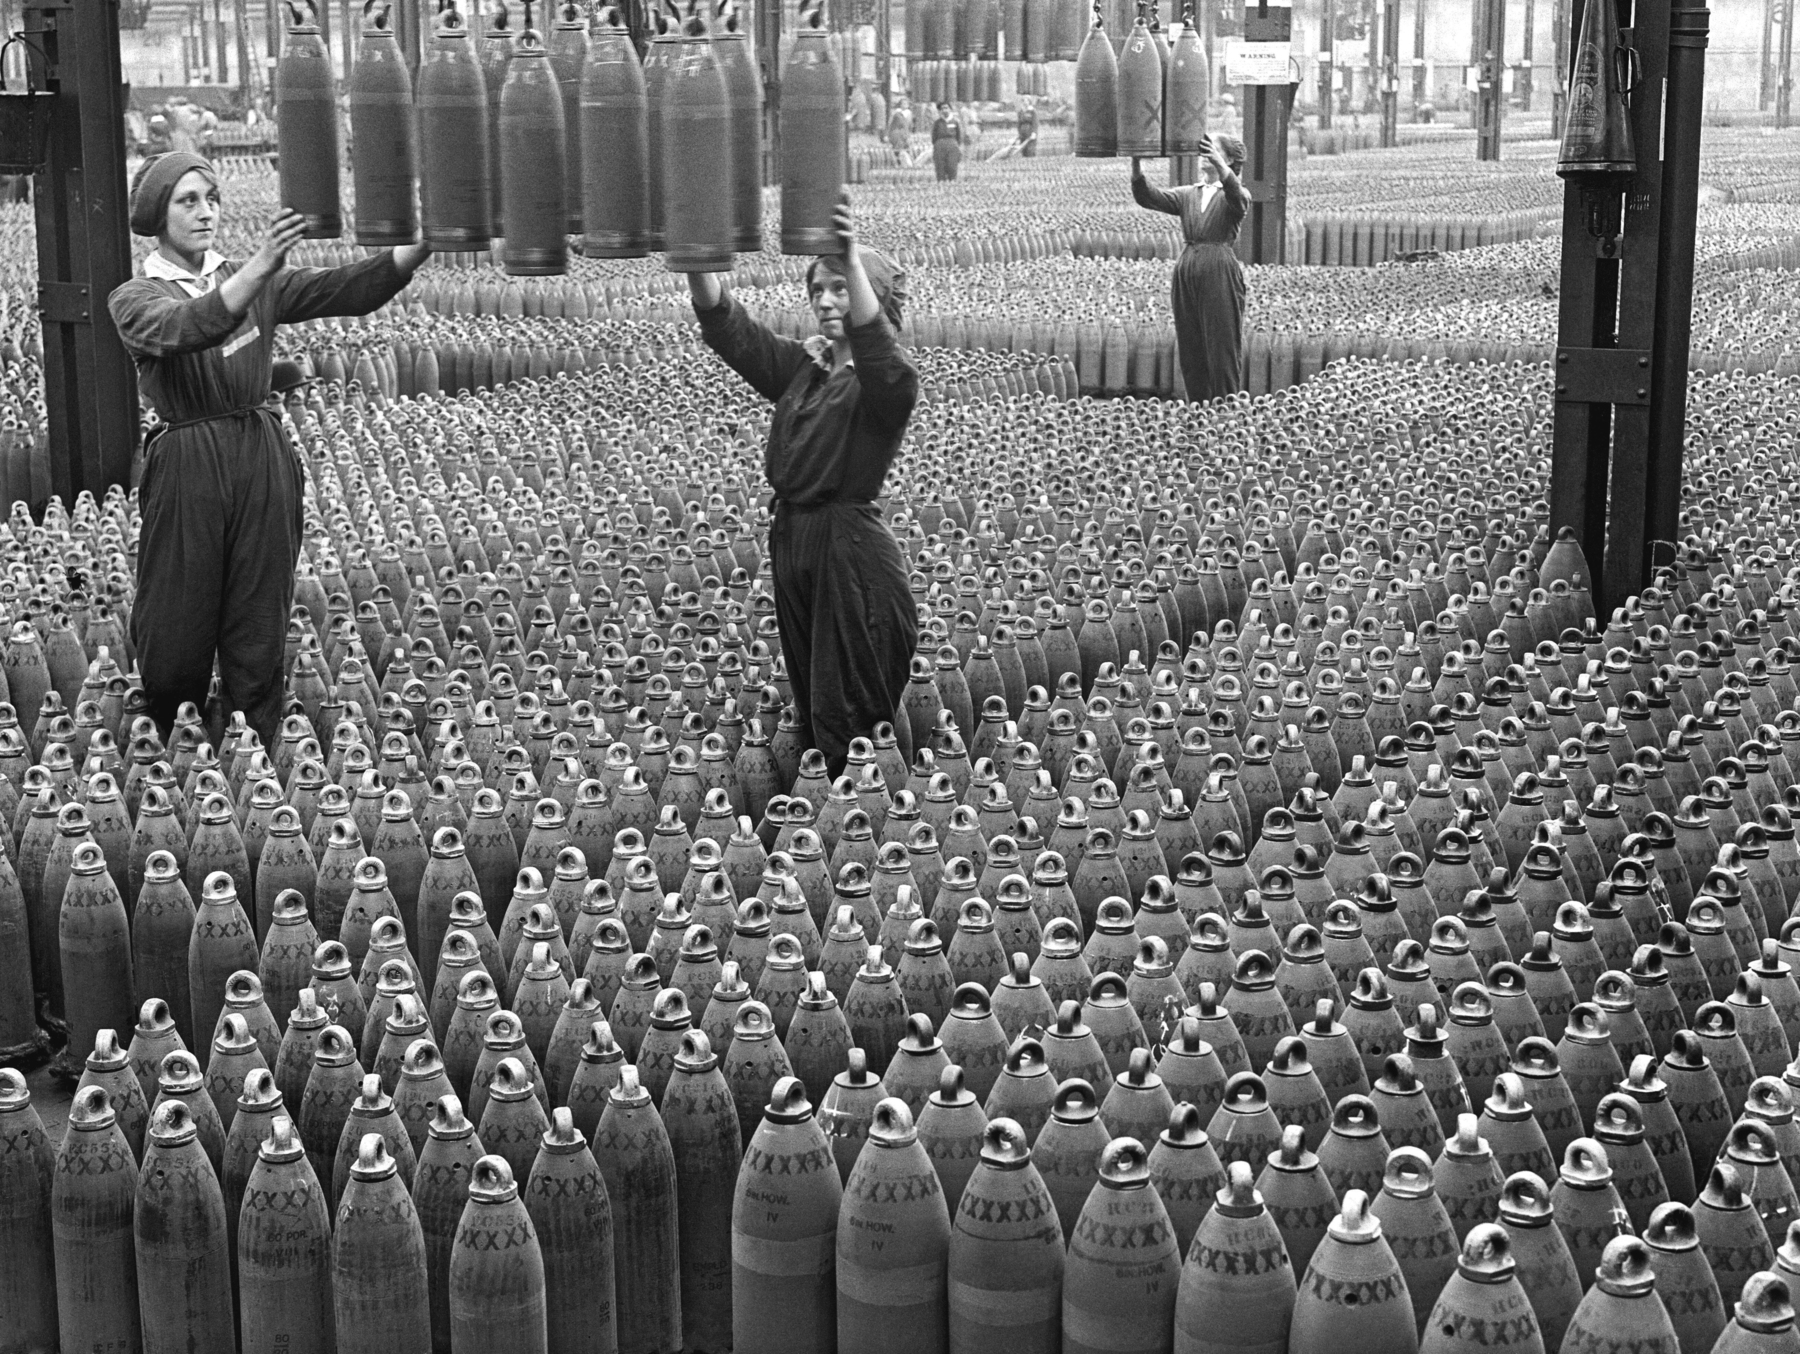 Fotografia em preto e branco. Em uma fábrica, três mulheres vestindo macacões escuros estão em pé, inspecionando mísseis que estão suspensos. O chão ao redor delas está coberto por mísseis enfileirados.